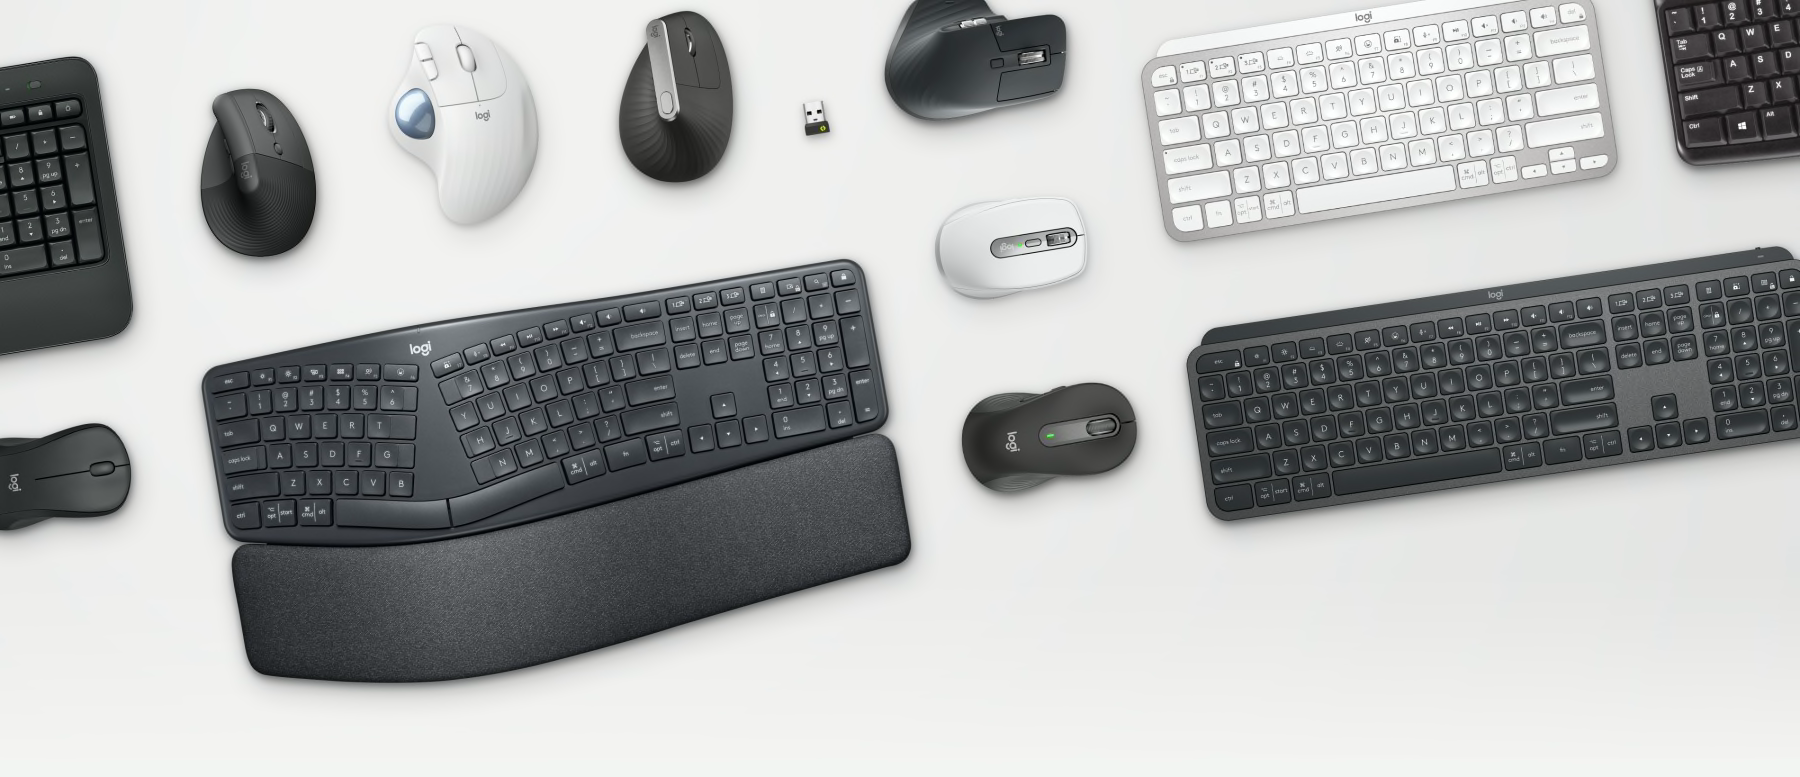 Strumenti di lavoro - Mouse e tastiera MX sul tavolo